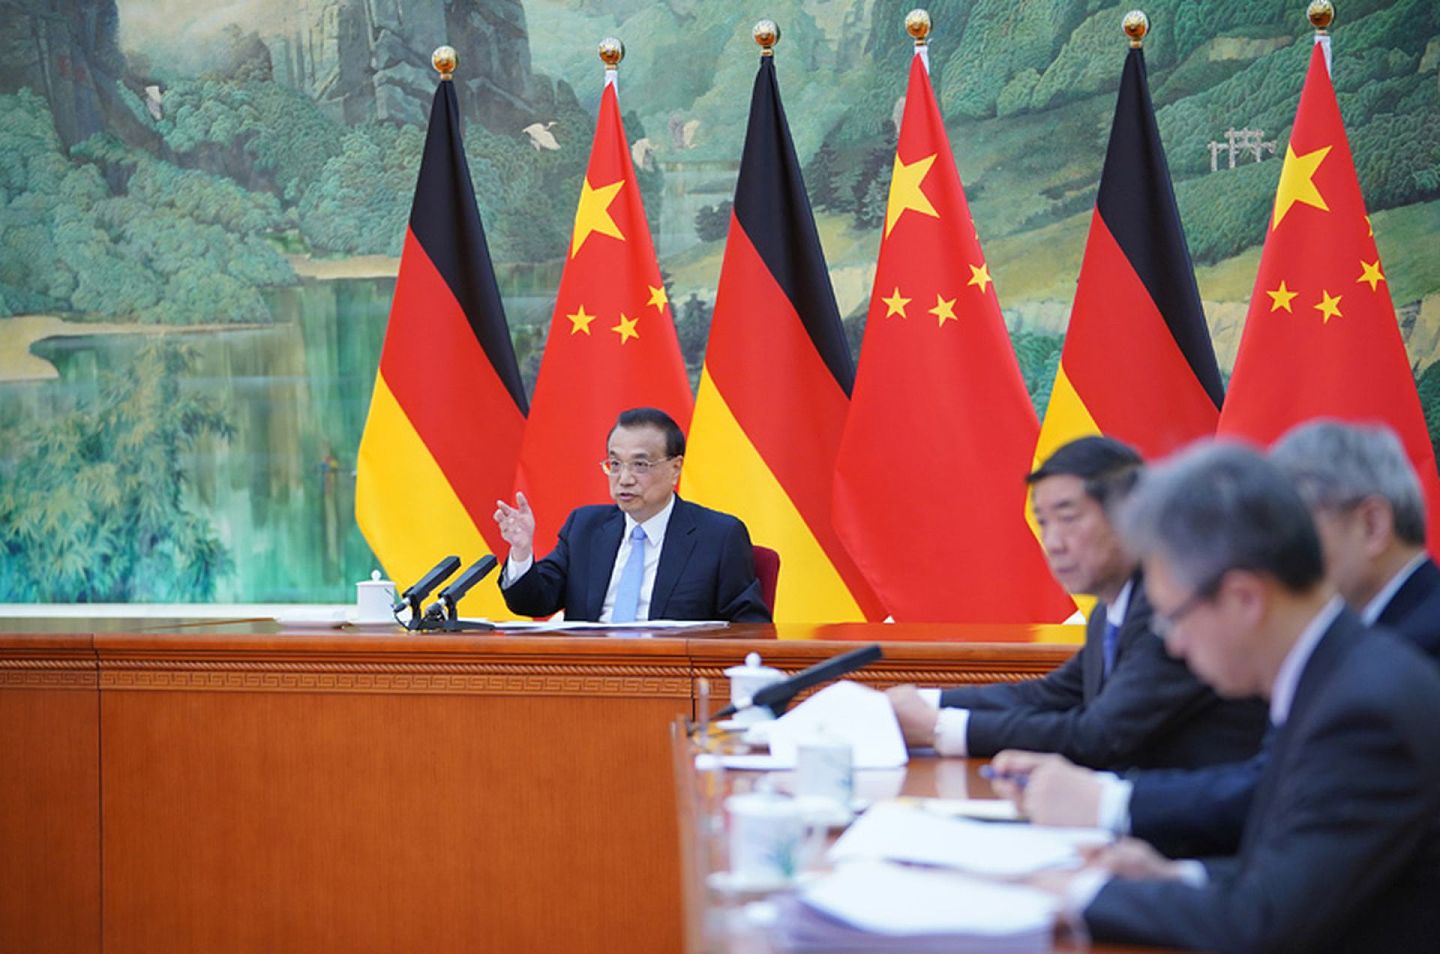 2021年4月28日，中国总理李克强在会谈中表示，中德是全方位战略伙伴，合作共赢是两国关系的主基调，直接受益者是两国人民。（中国政府网）